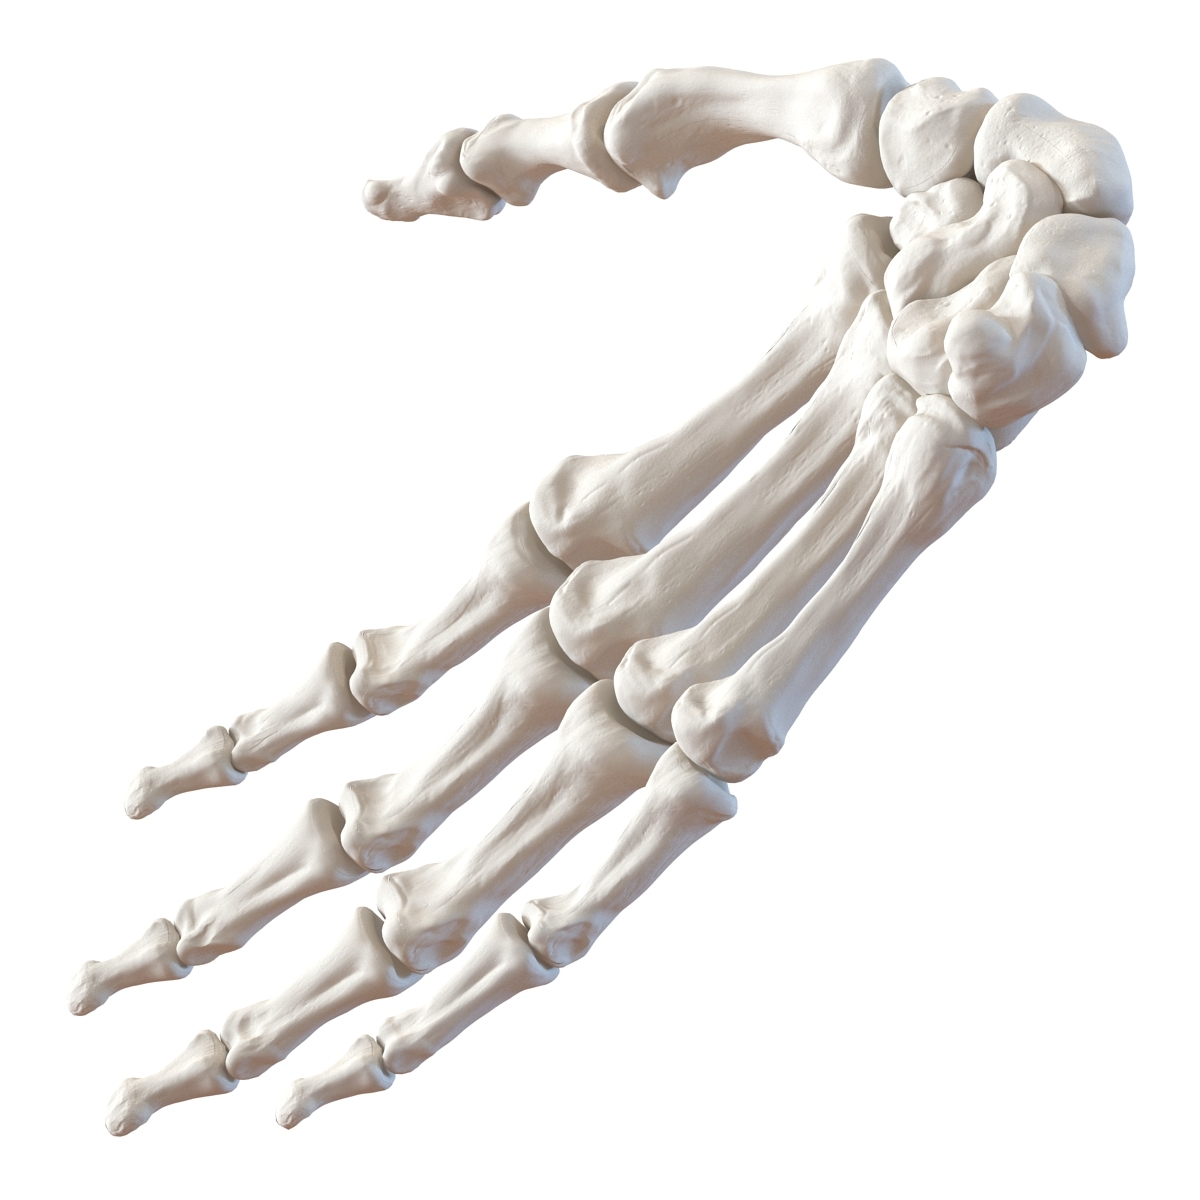 Hand bone